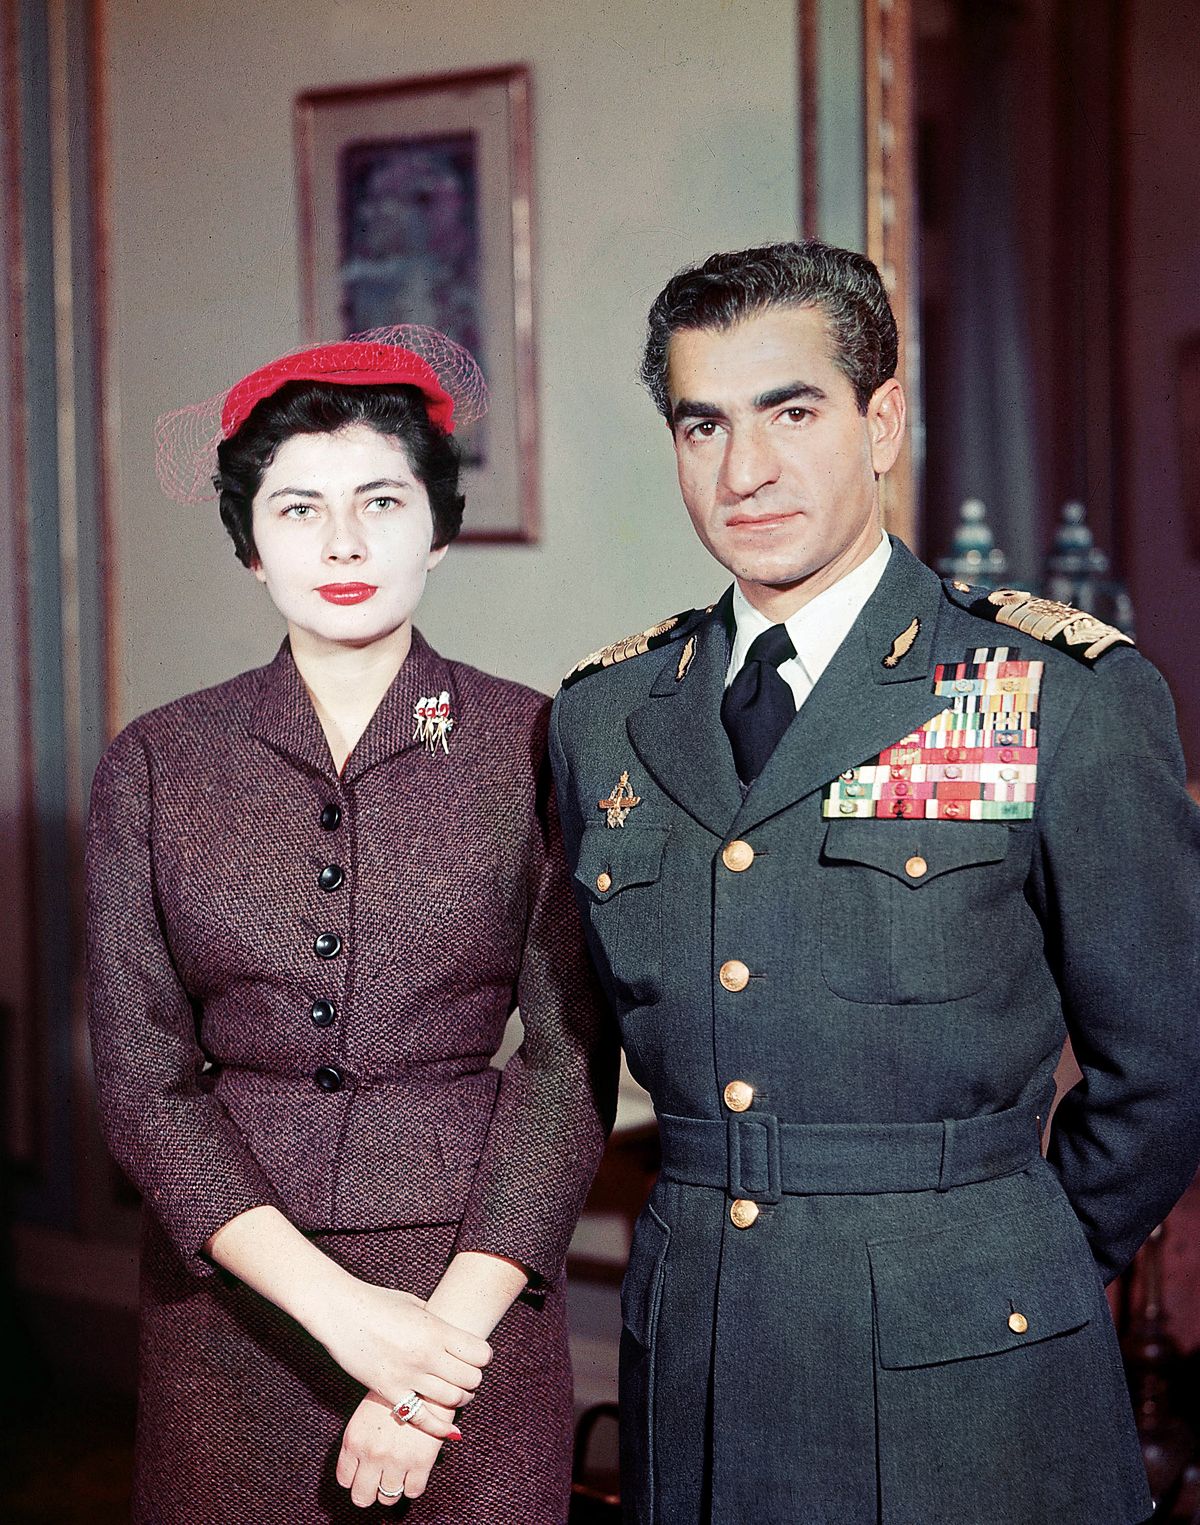 Мохаммад Реза Пехлеви, шах Ирана со своей второй женой королевой Сорайей Исфандияри, с которой он развелся из-за ее неспособности родить наследника, 1958 г.